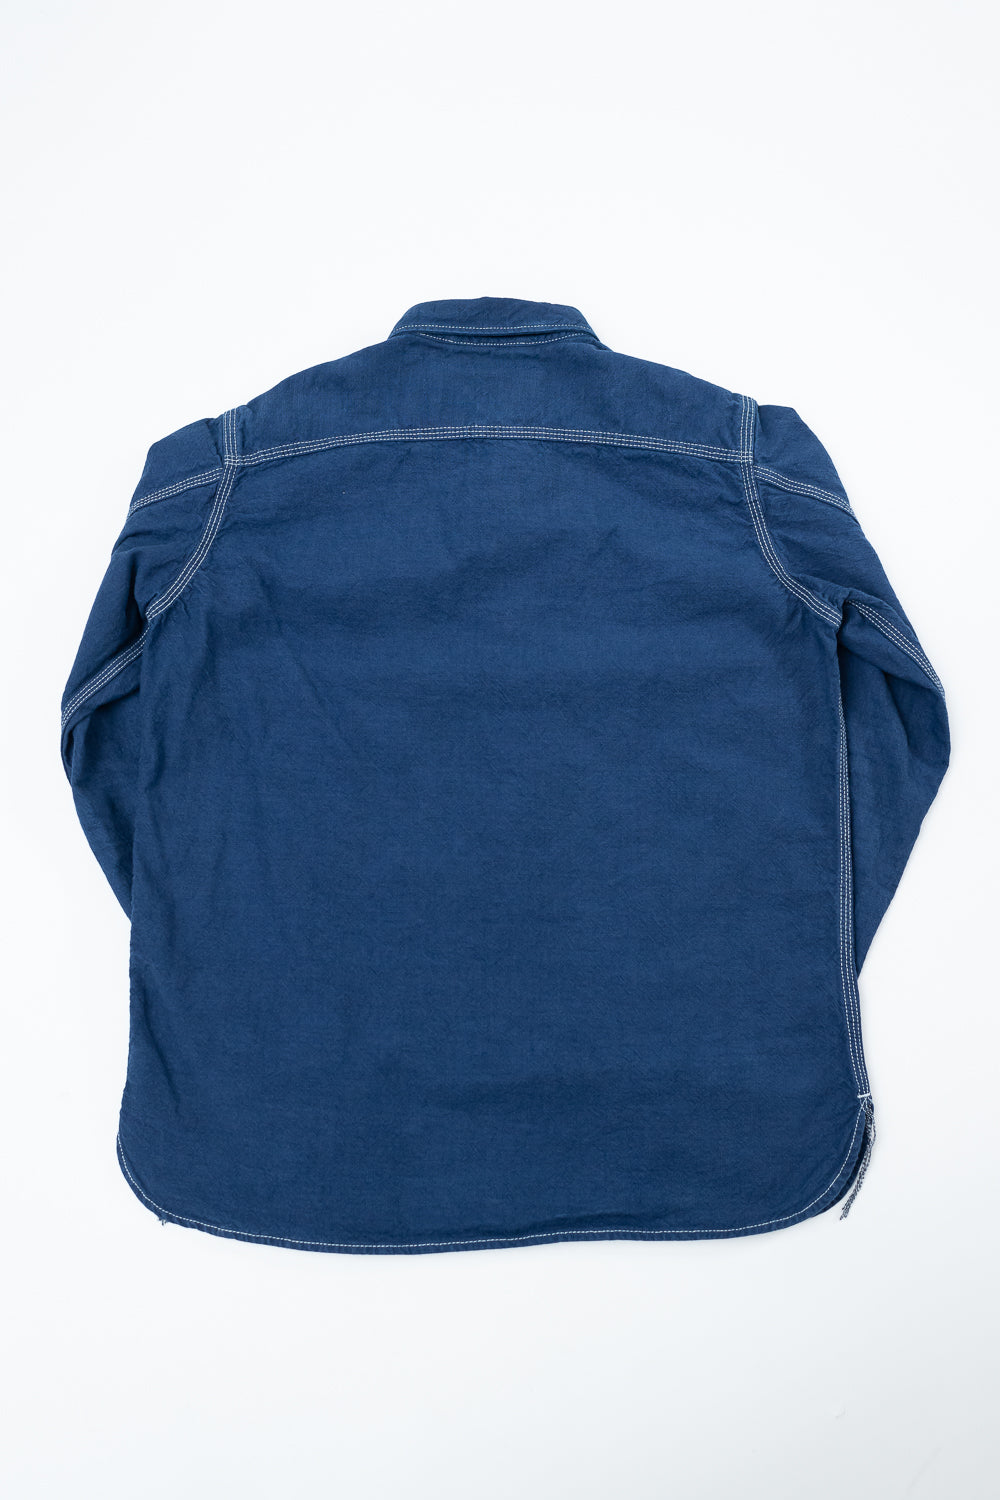 10oz Overdyed Work Shirt - Blue